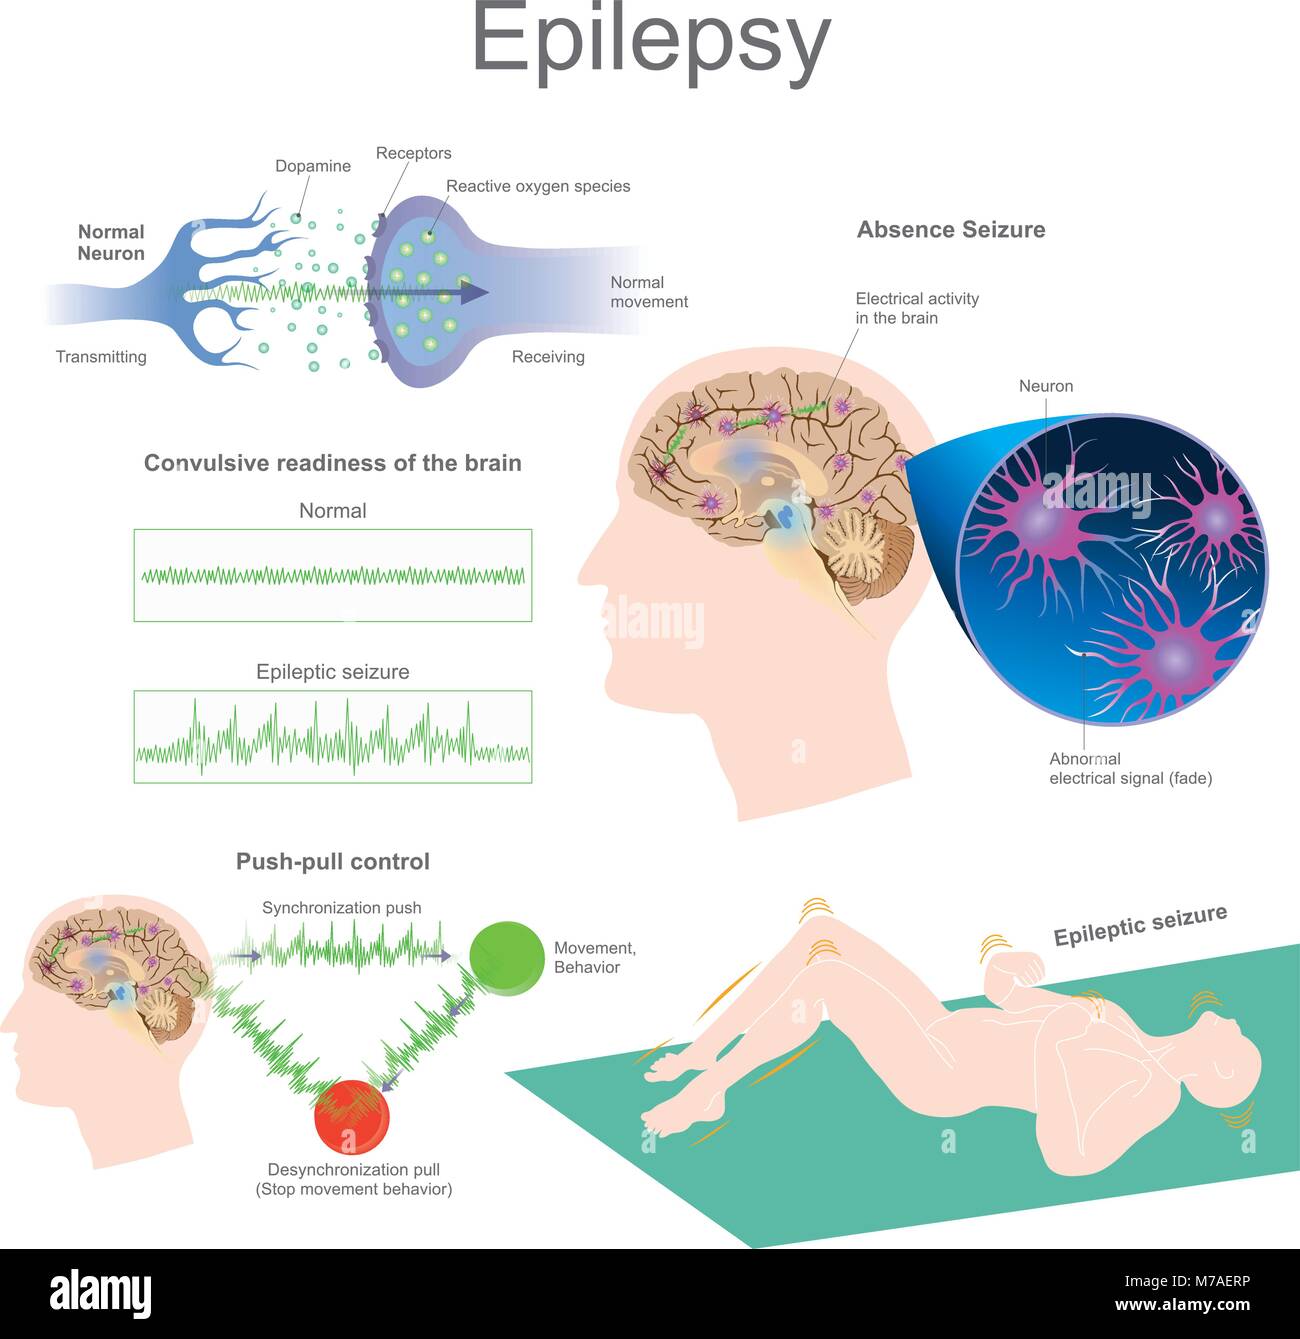 L'épilepsie est un groupe de troubles neurologiques caractérisé par des crises épileptiques. Les crises d'épilepsie sont la suite d'une consommation excessive et anormale c nerf Illustration de Vecteur